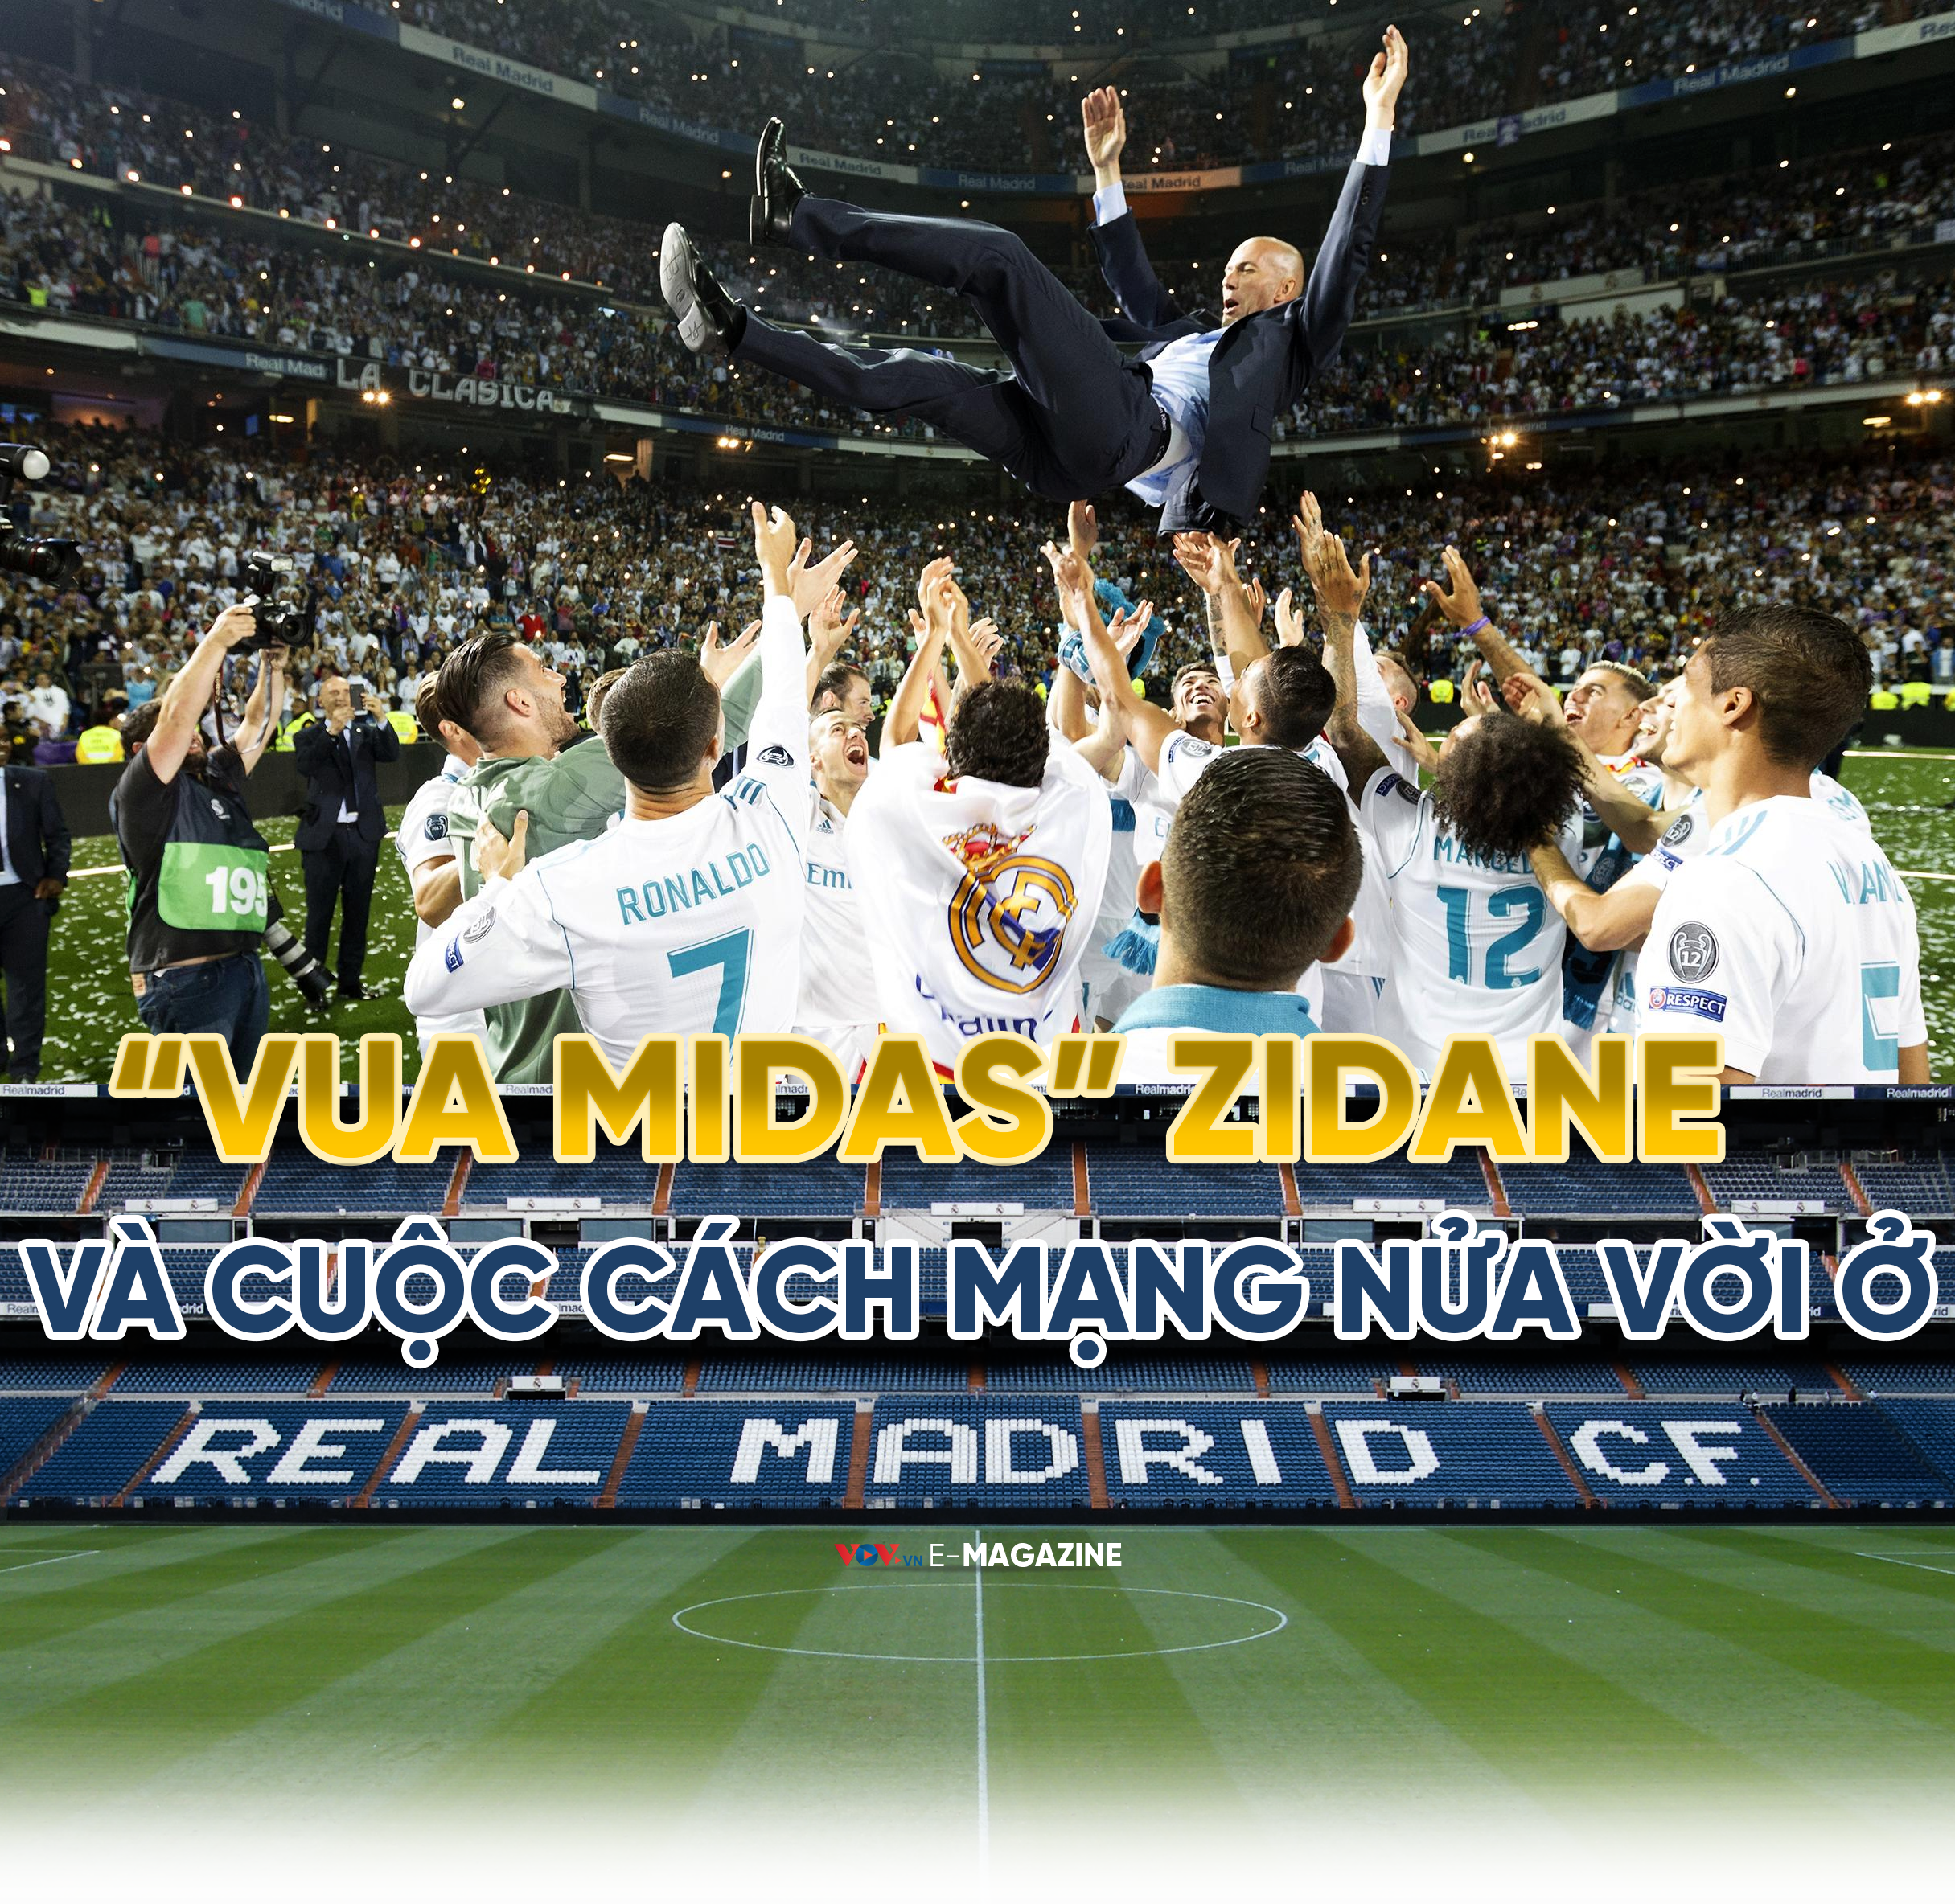 “Vua Midas” Zidane và cuộc cách mạng nửa vời ở Real Madrid - Ảnh 1.